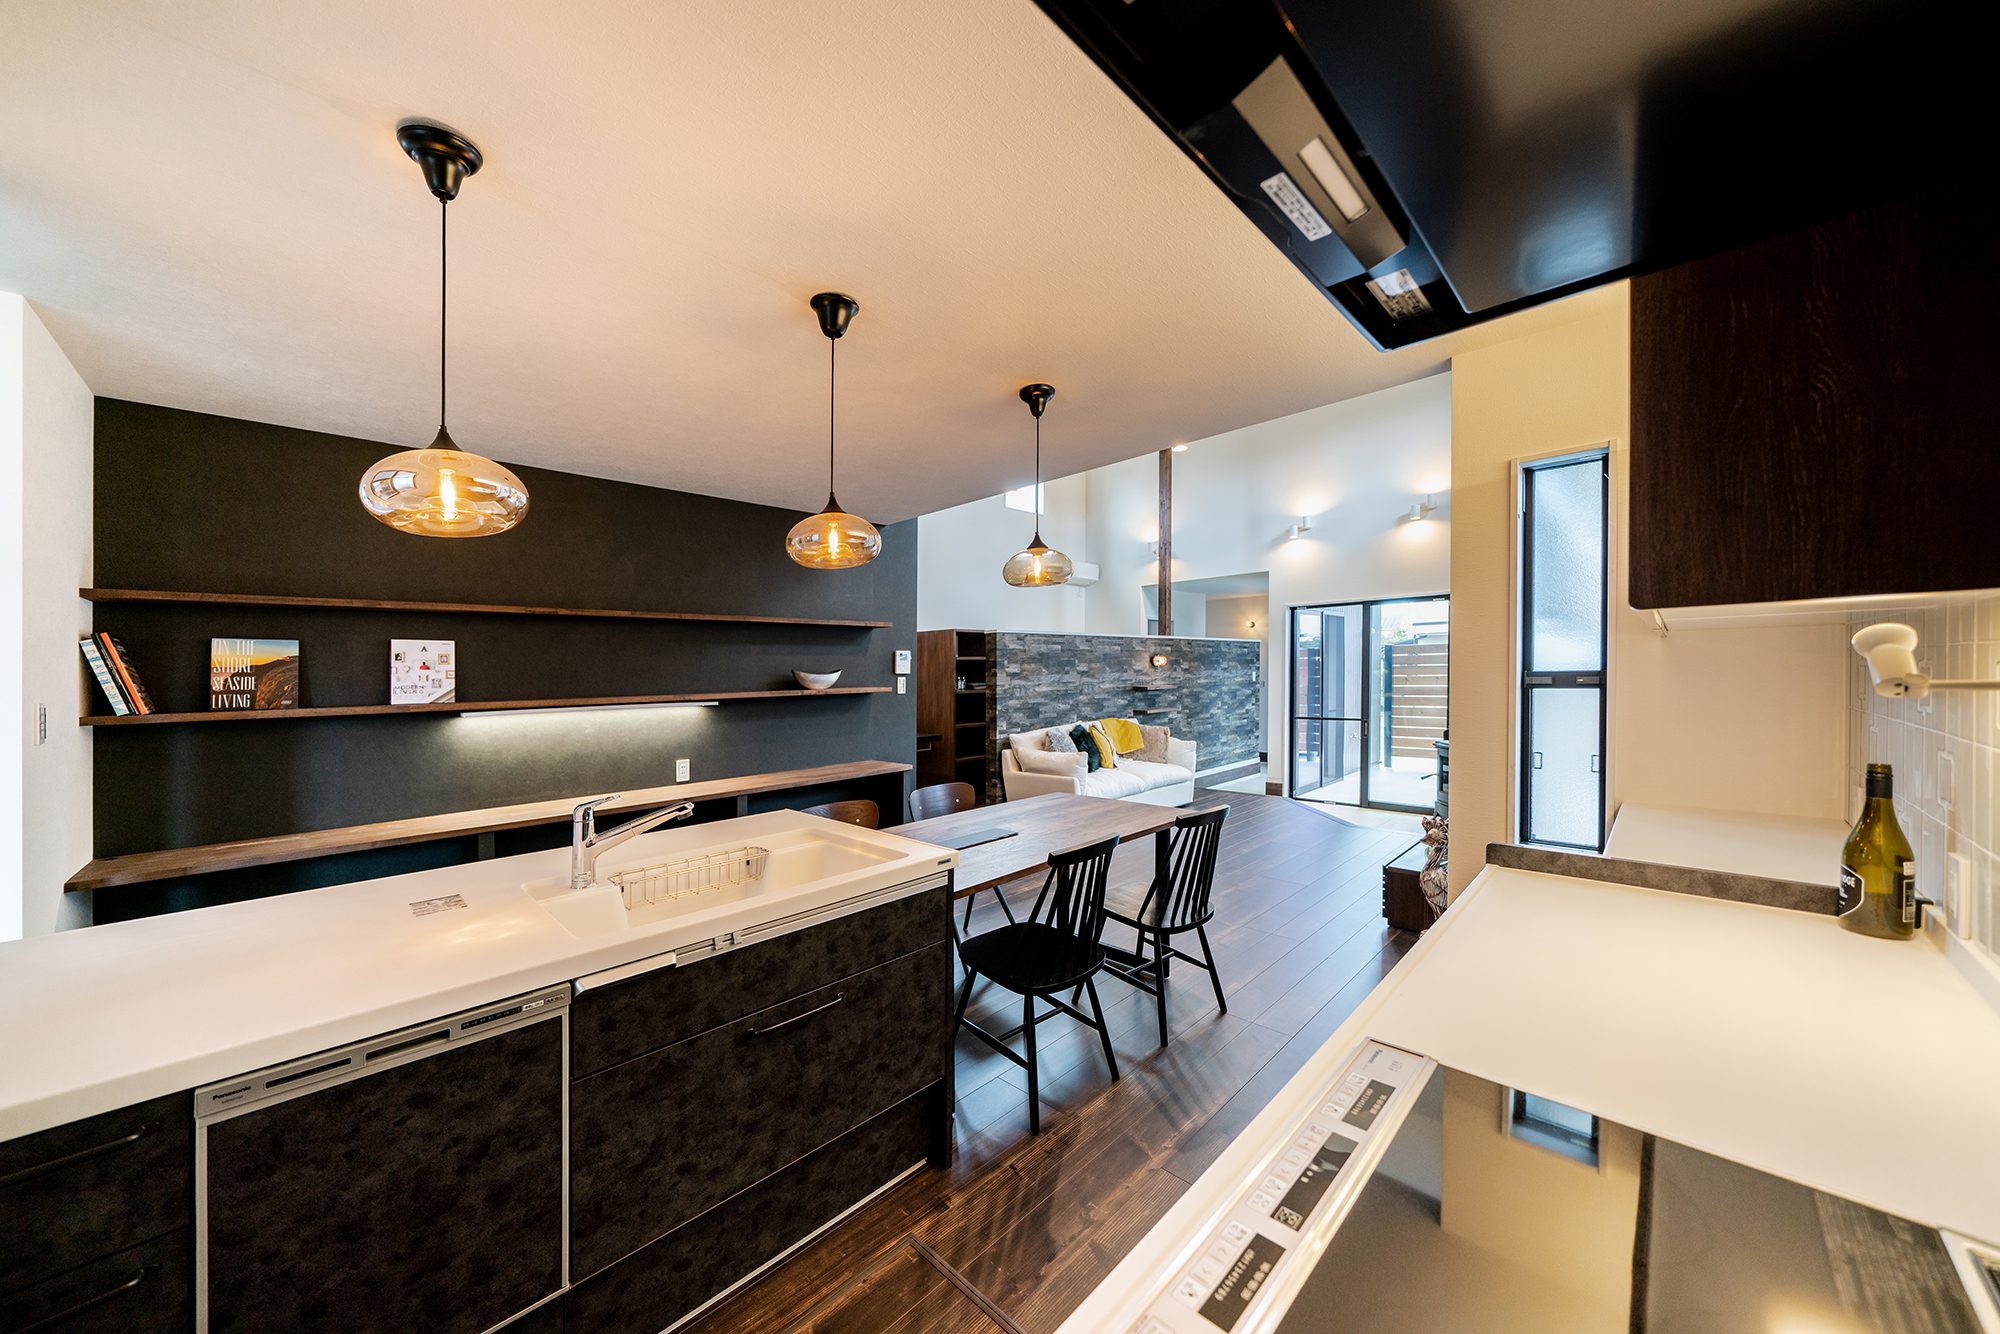 シンクとコンロが分かれたセパレート型キッチン。広い作業スペースを確保し、移動距離が短く料理しやすい